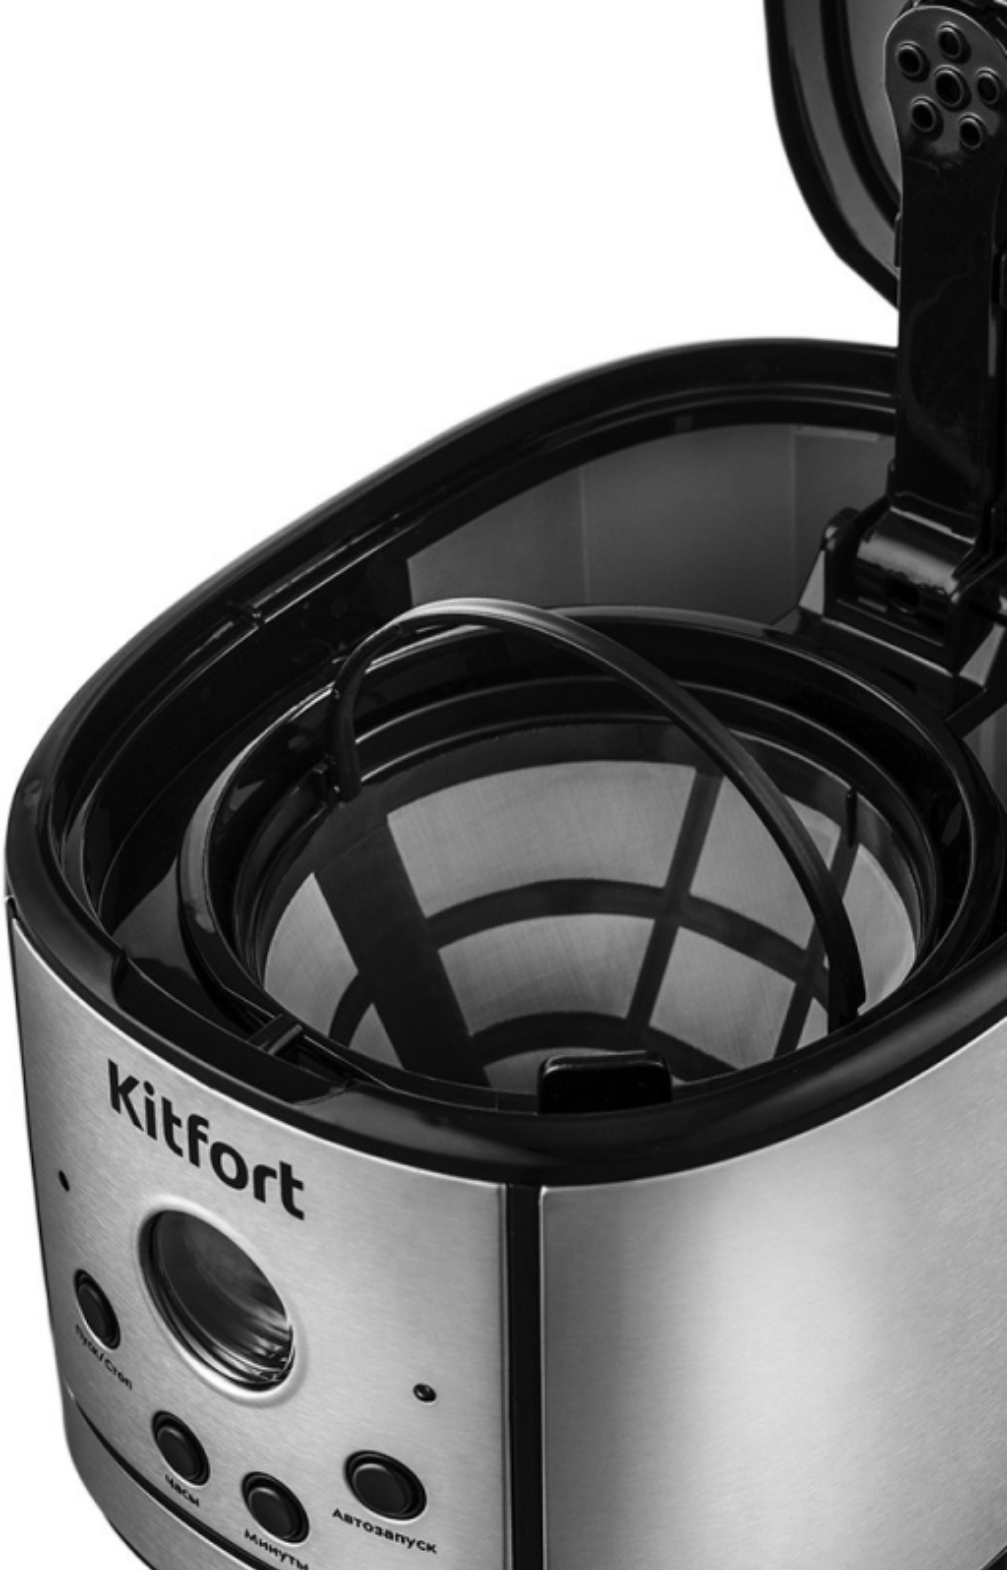 Капельная кофеварка Kitfort, дисплей, индикатор включения, индикатор уровня воды, плита автоподогрева - фотография № 3